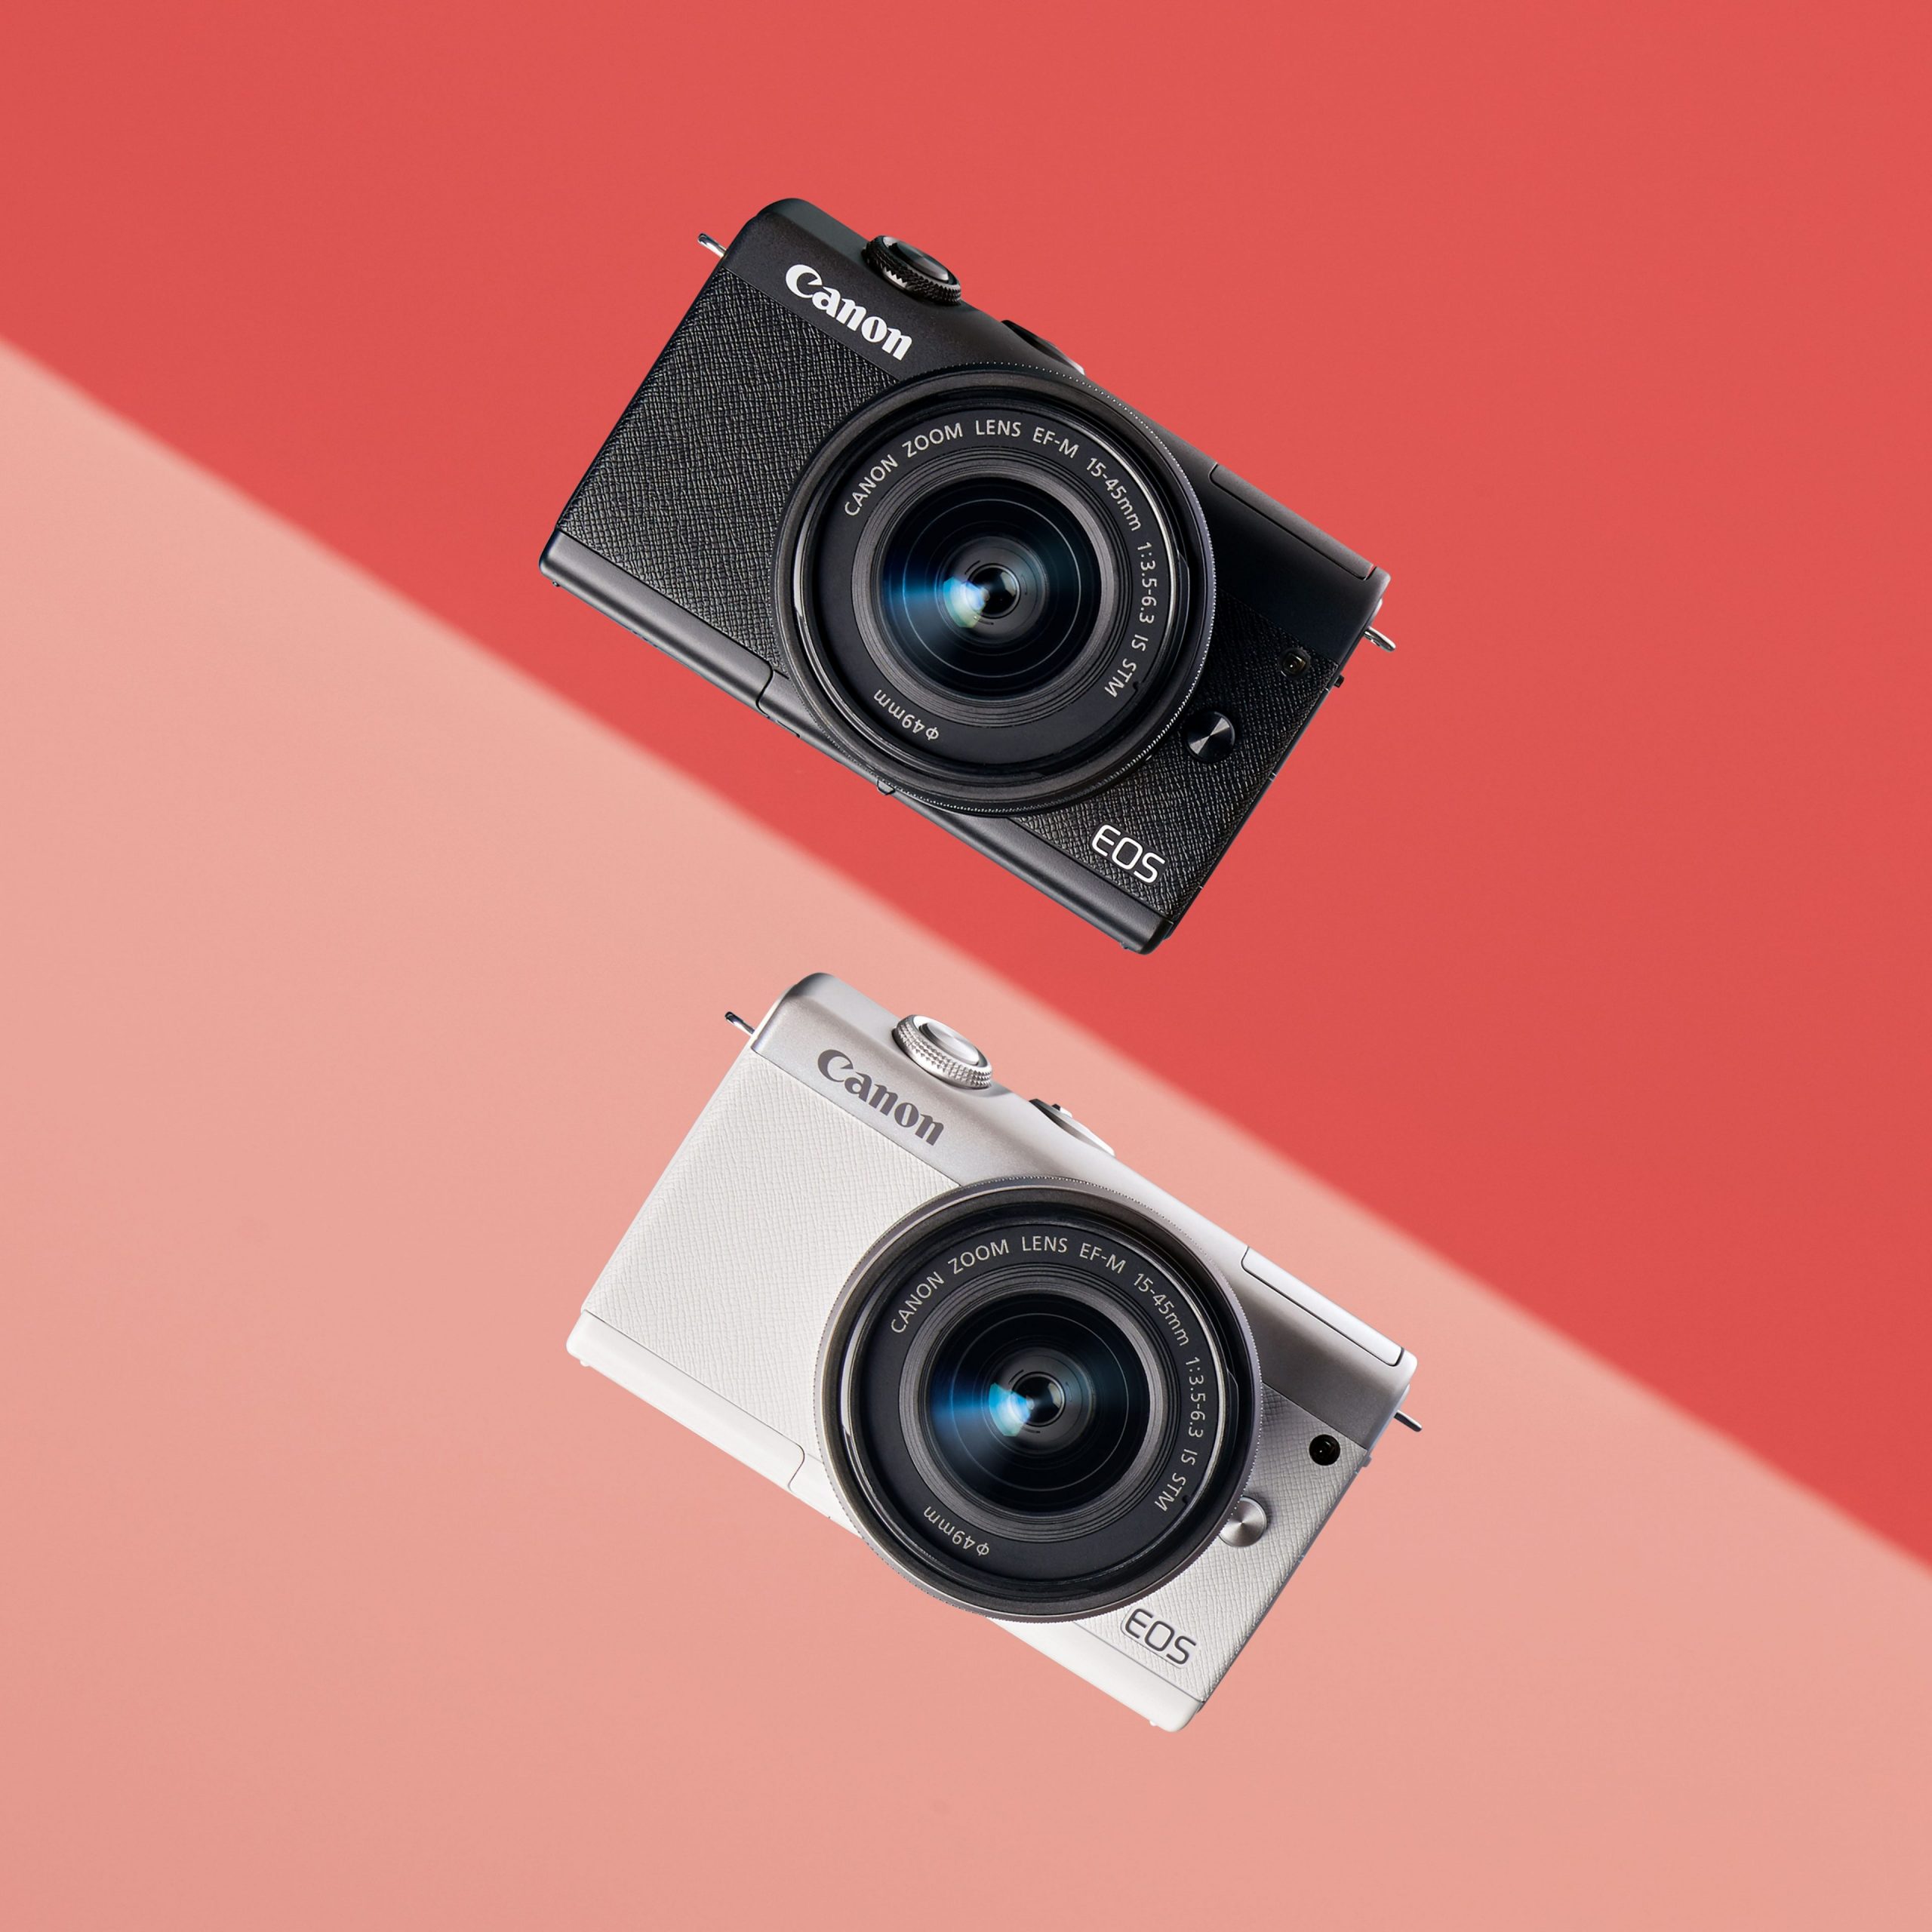 Canon ra mắt máy ảnh EOS M200 giá từ 15,900,000 VND